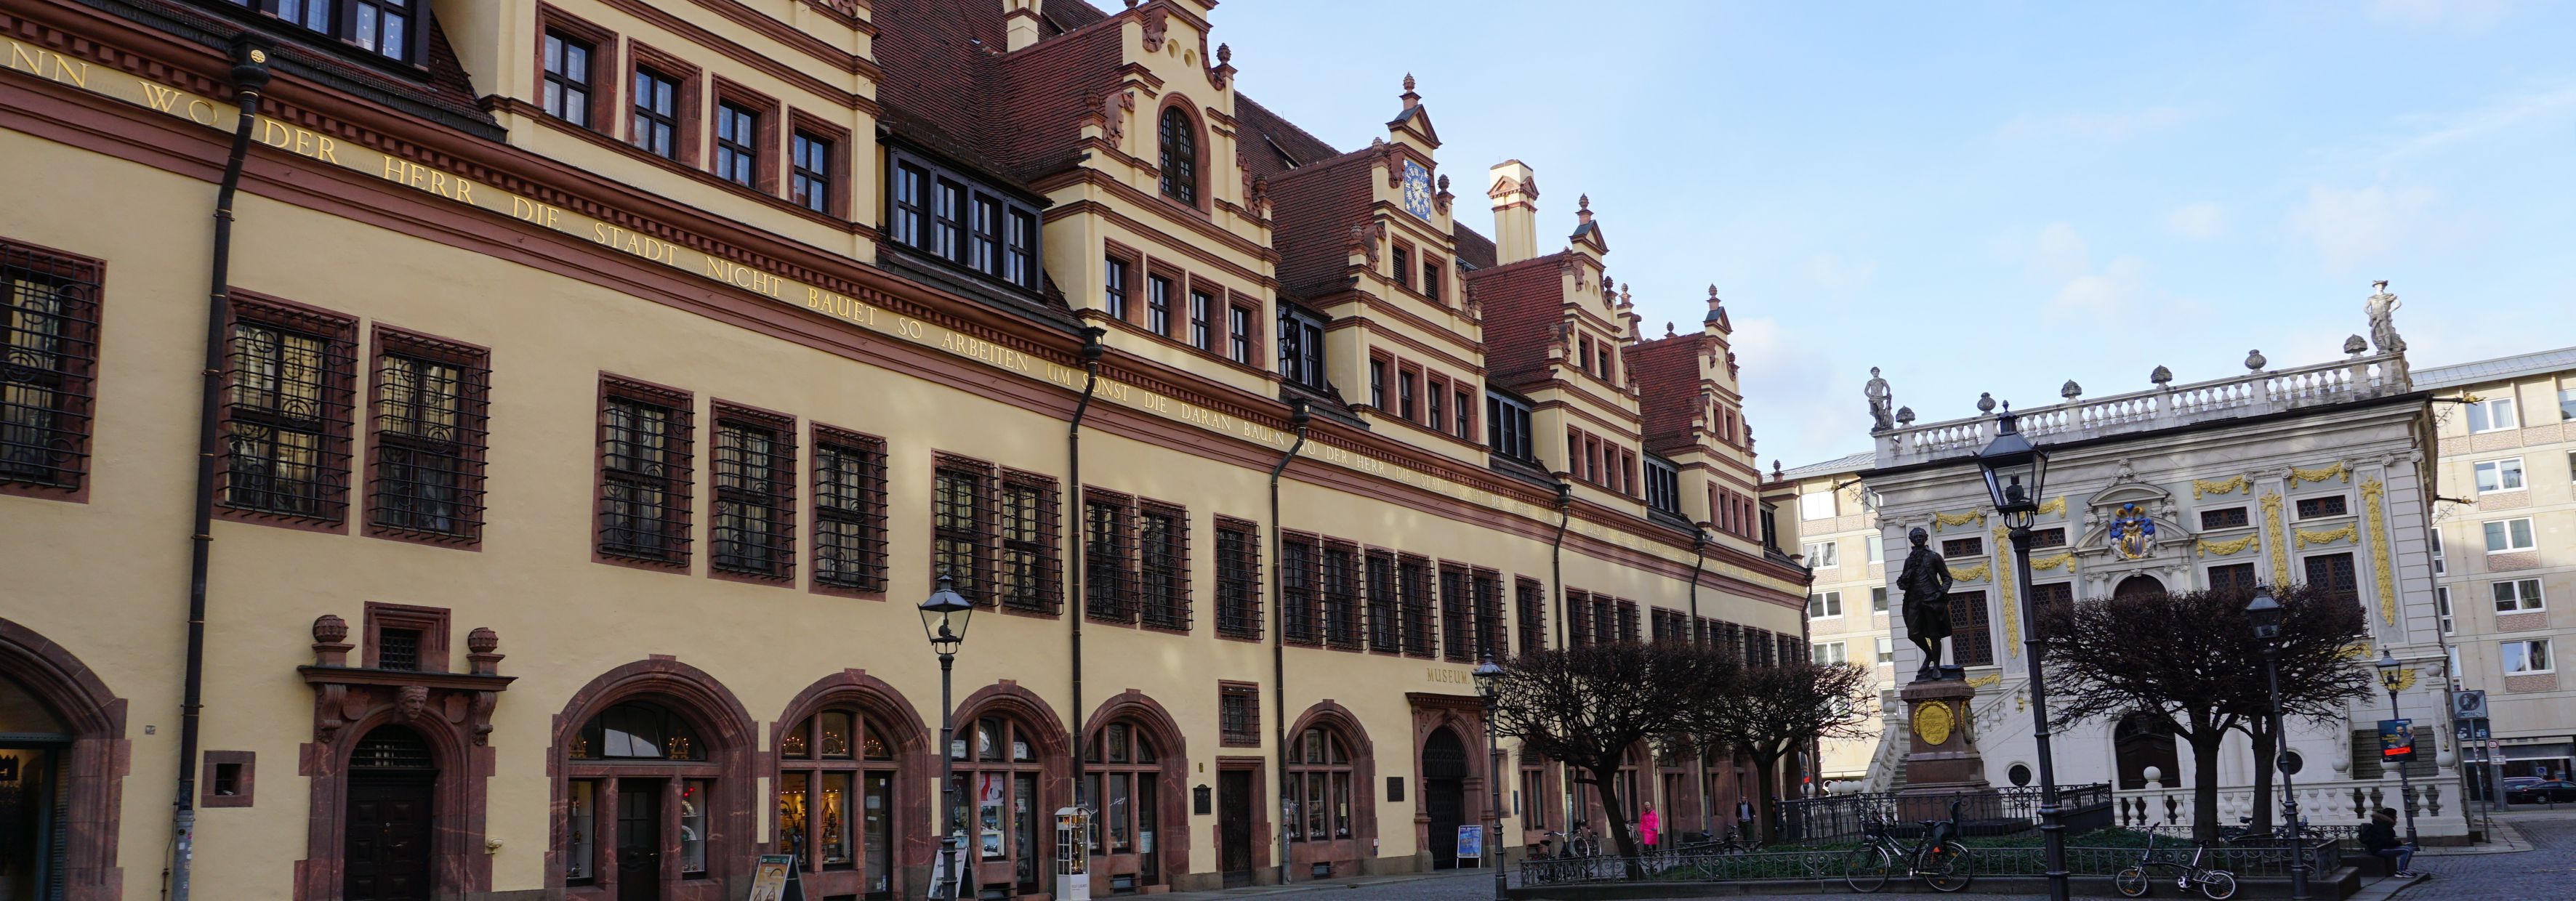 Altes Rathaus und Alte Handelsbrse, Leipzig